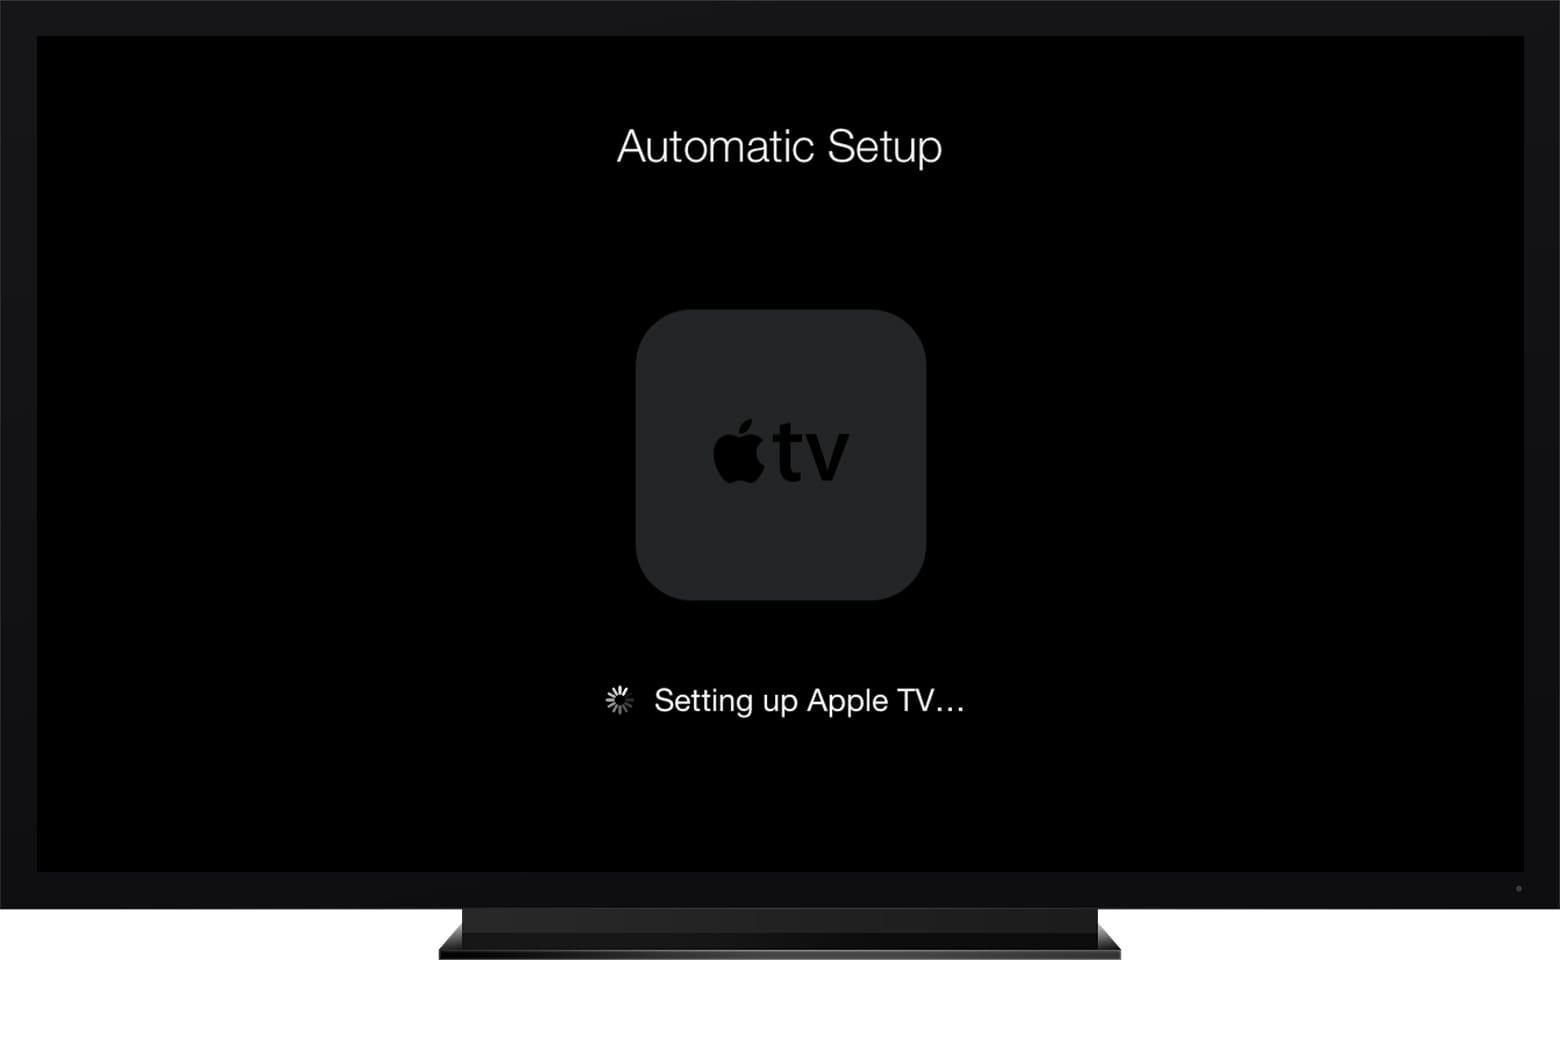 Eine neue Apple TV Remote App für iOS